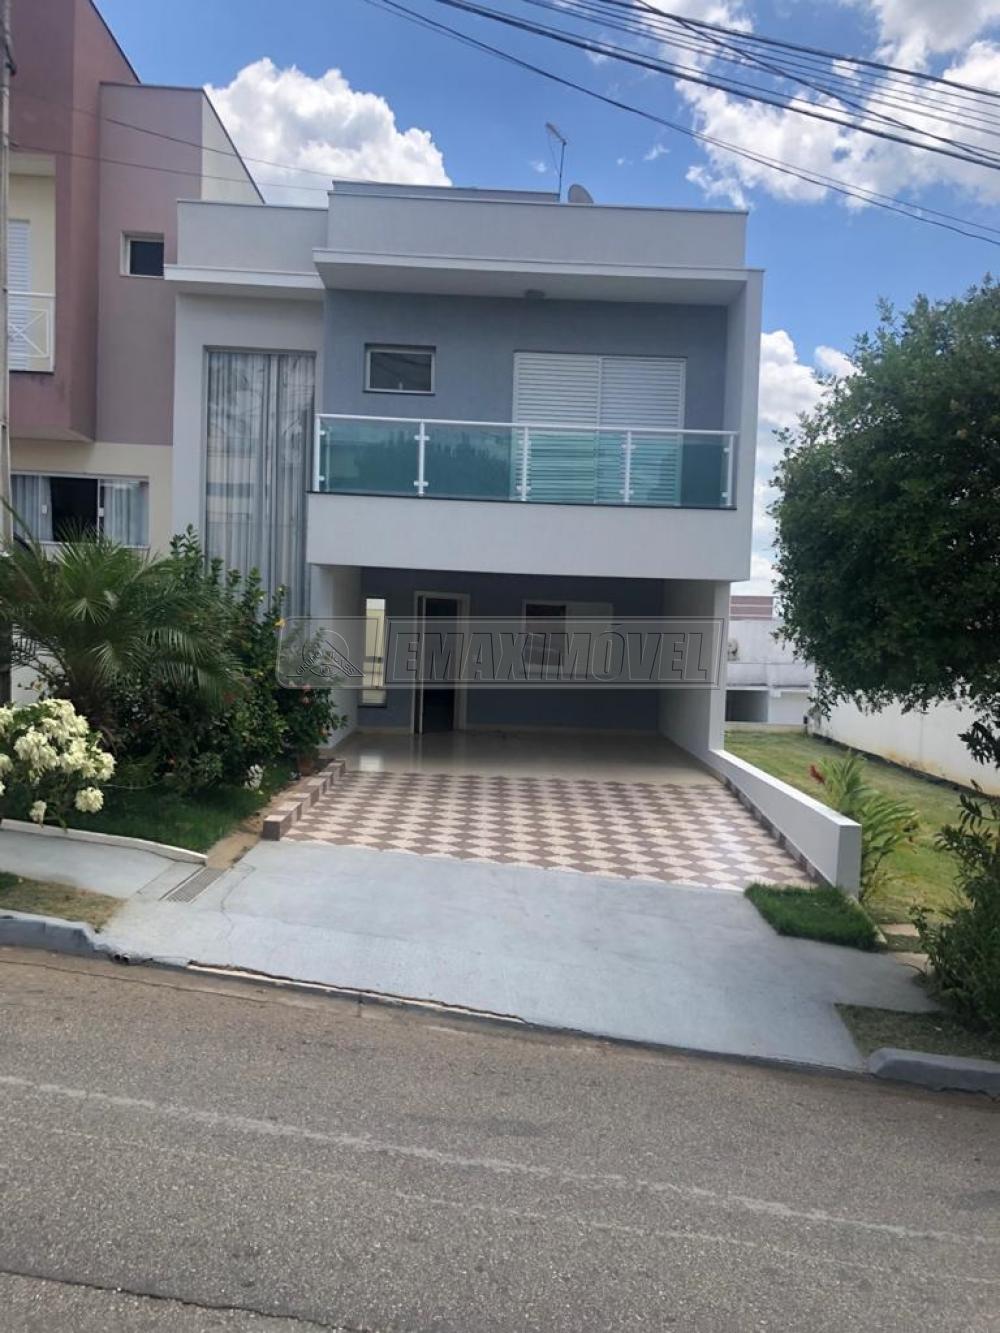 Comprar Casa / em Condomínios em Sorocaba R$ 590.000,00 - Foto 1